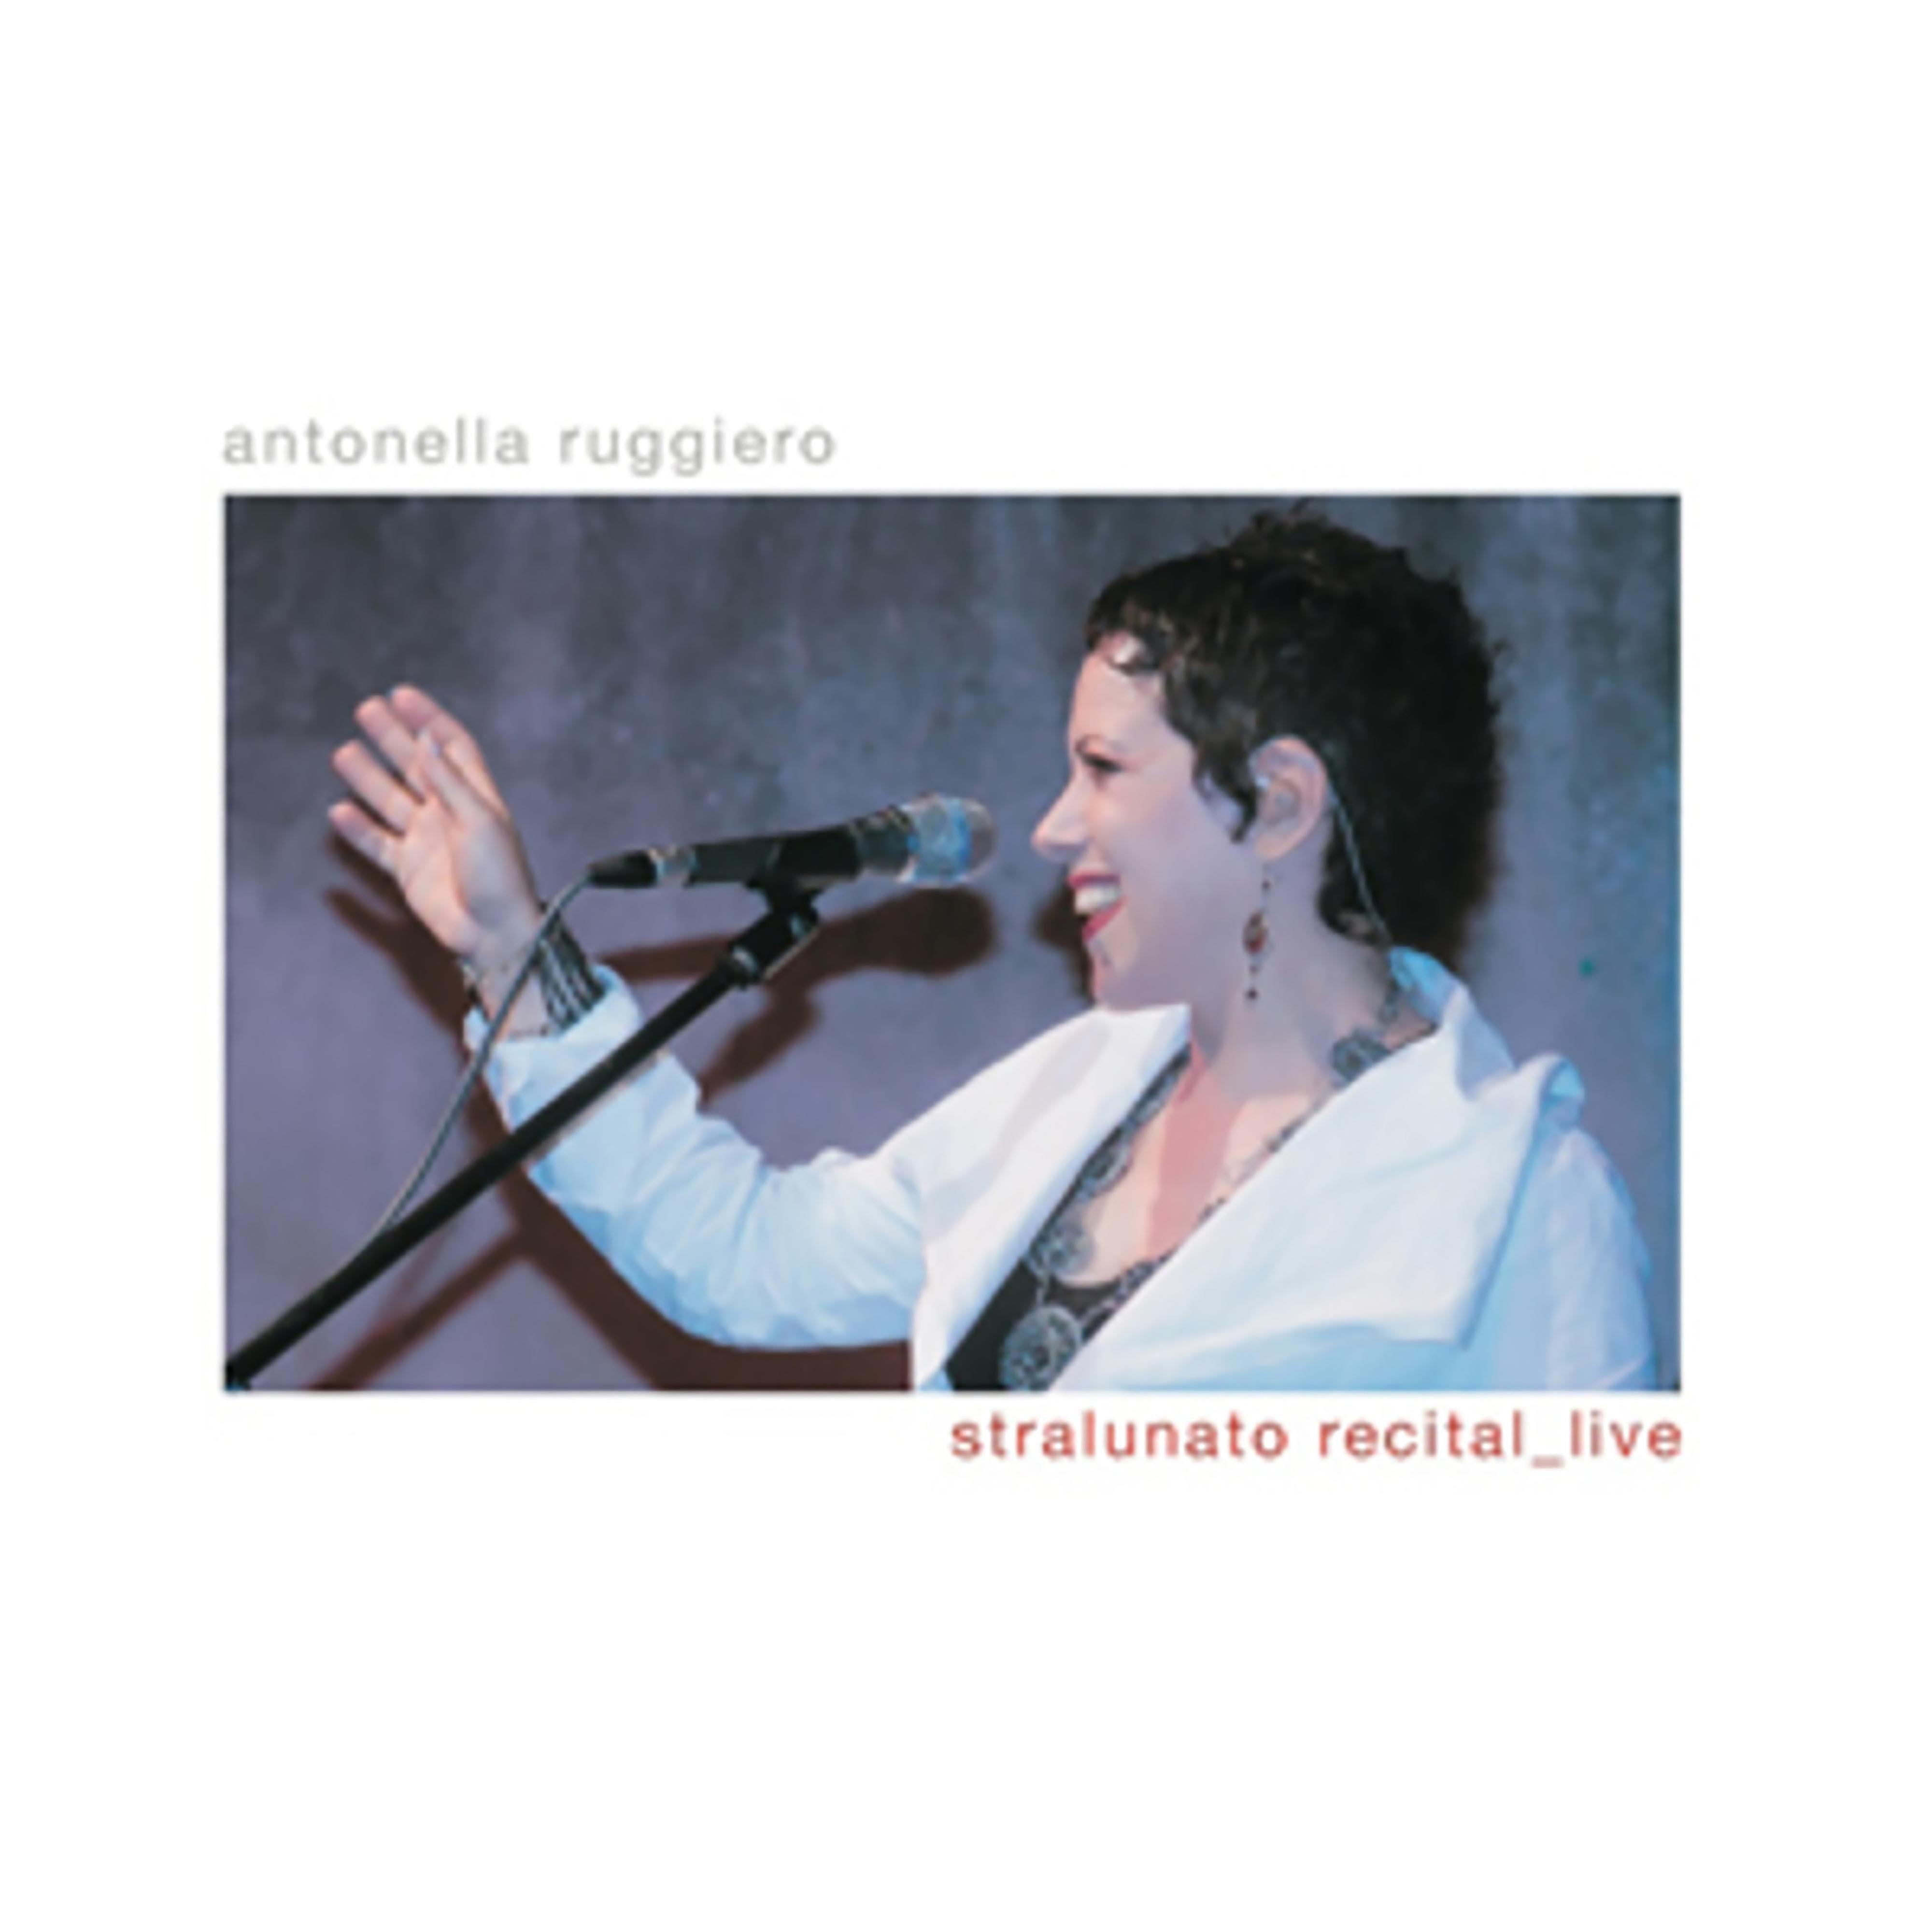 Antonella Ruggiero - Round midnight (Live)